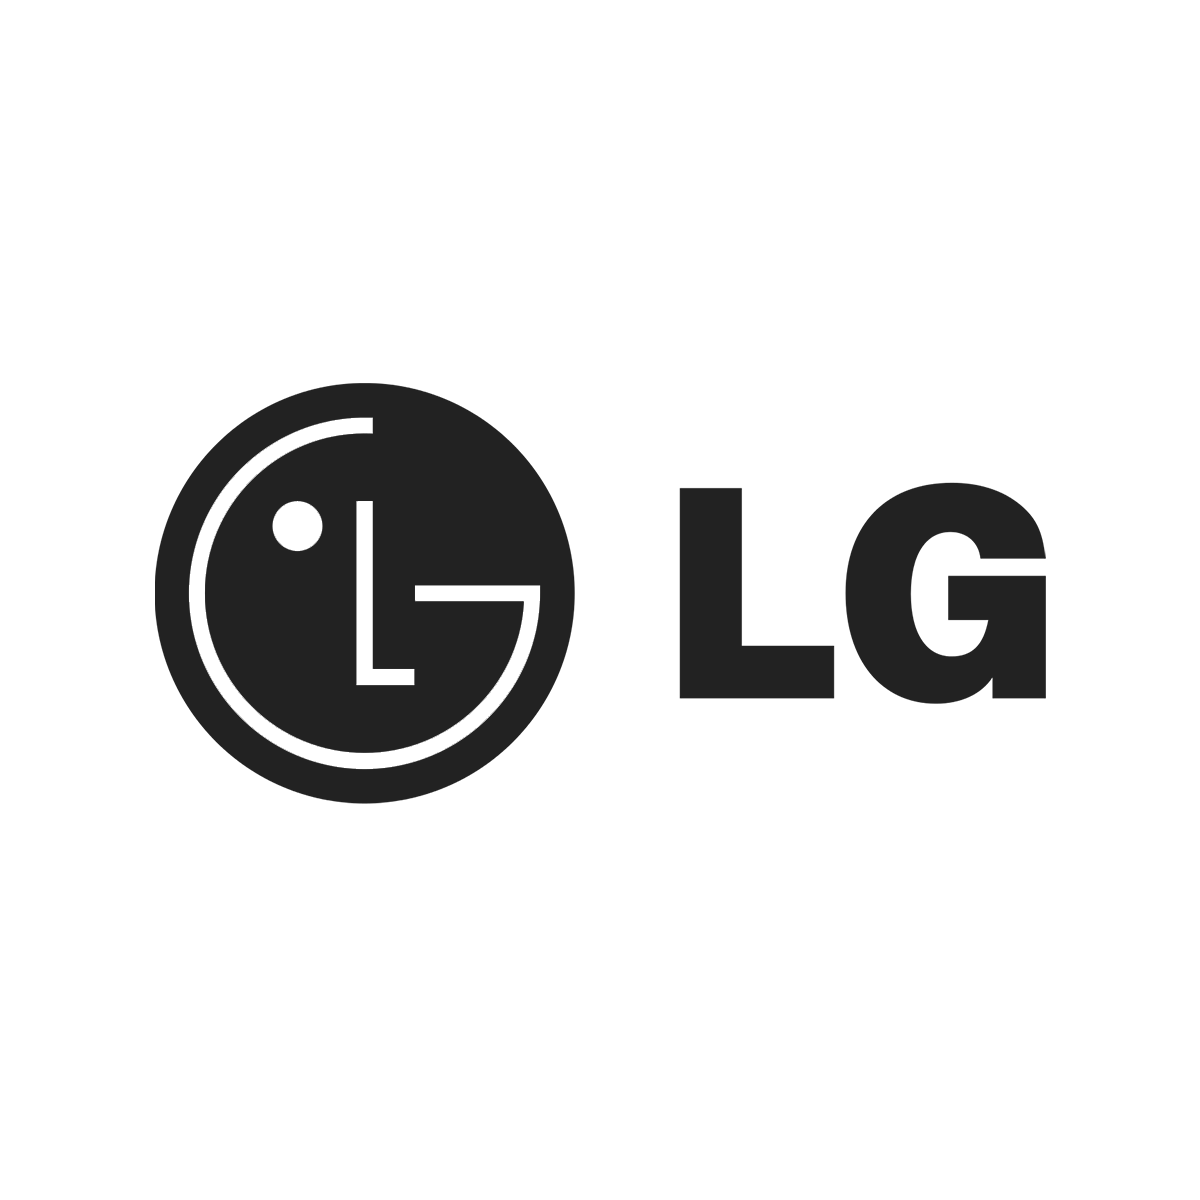 Lg supports ru. Значок LG. LG лейбл. Наклейка LG. Наклейка с логотипом LG.